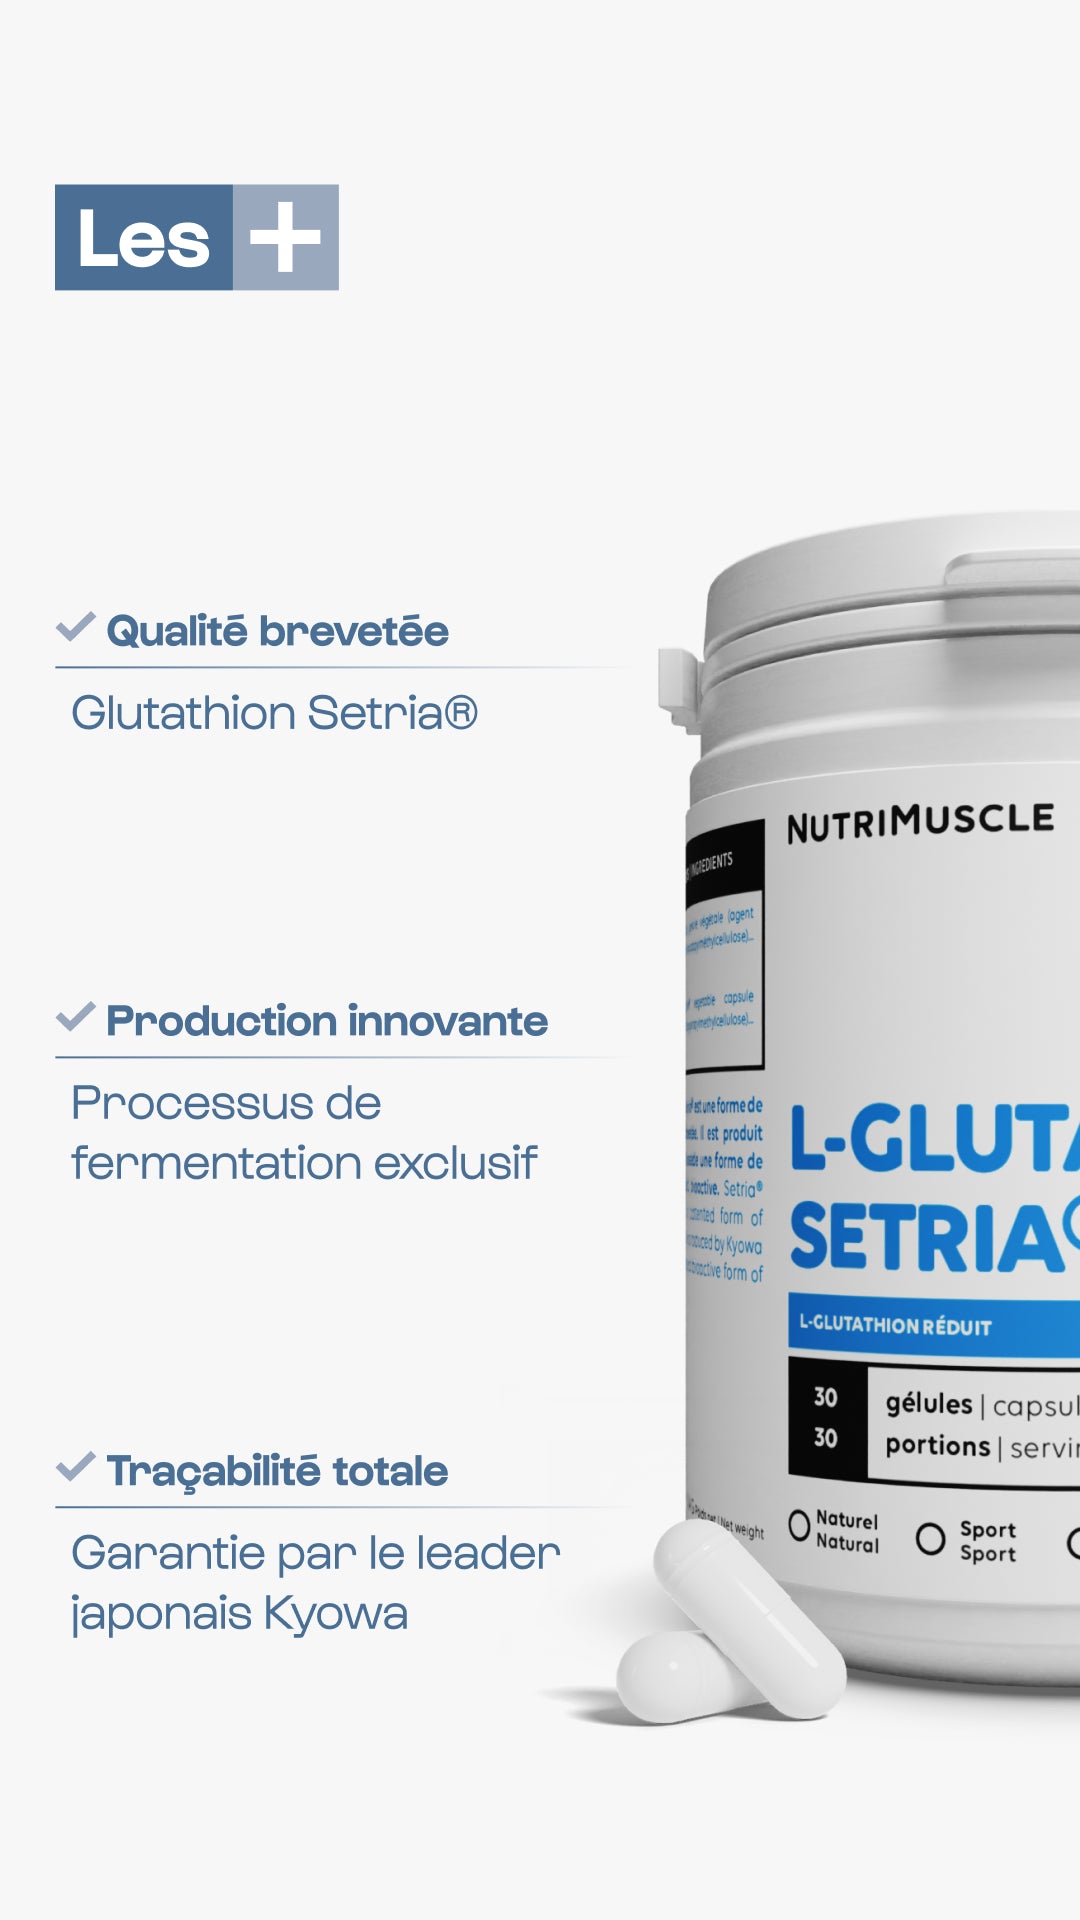 Glutathione Setria®